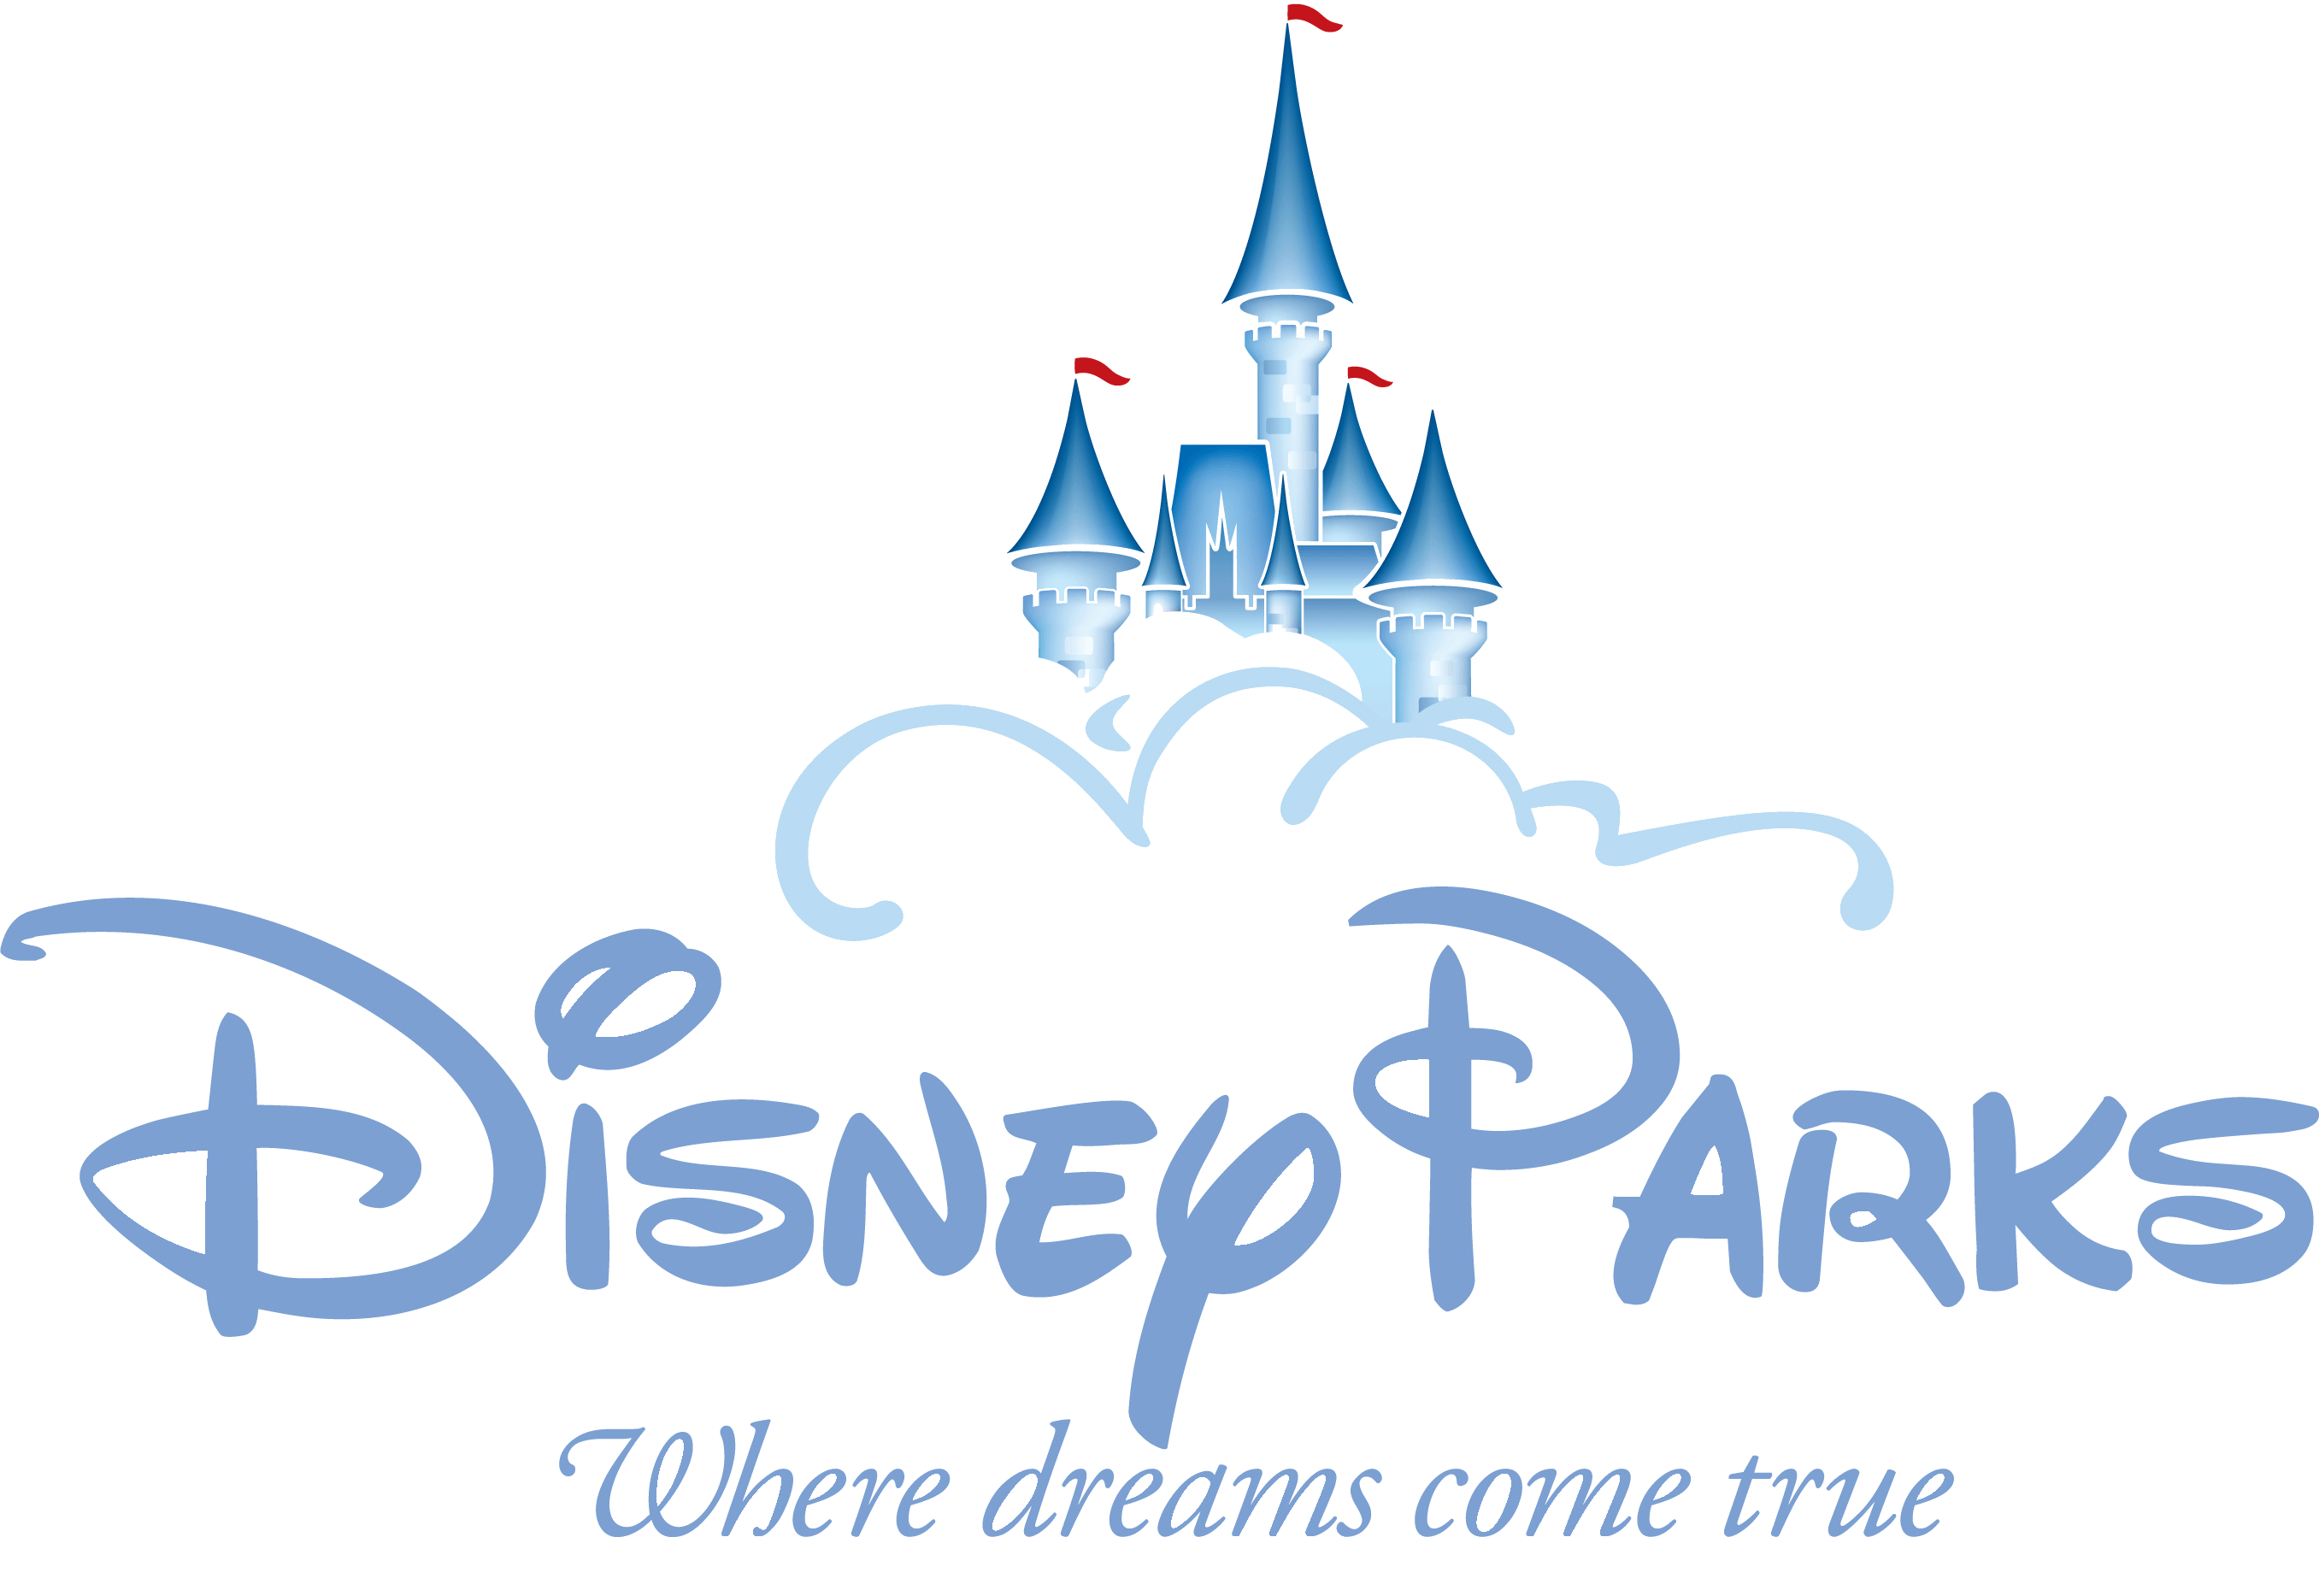 disney parks png logo 4730